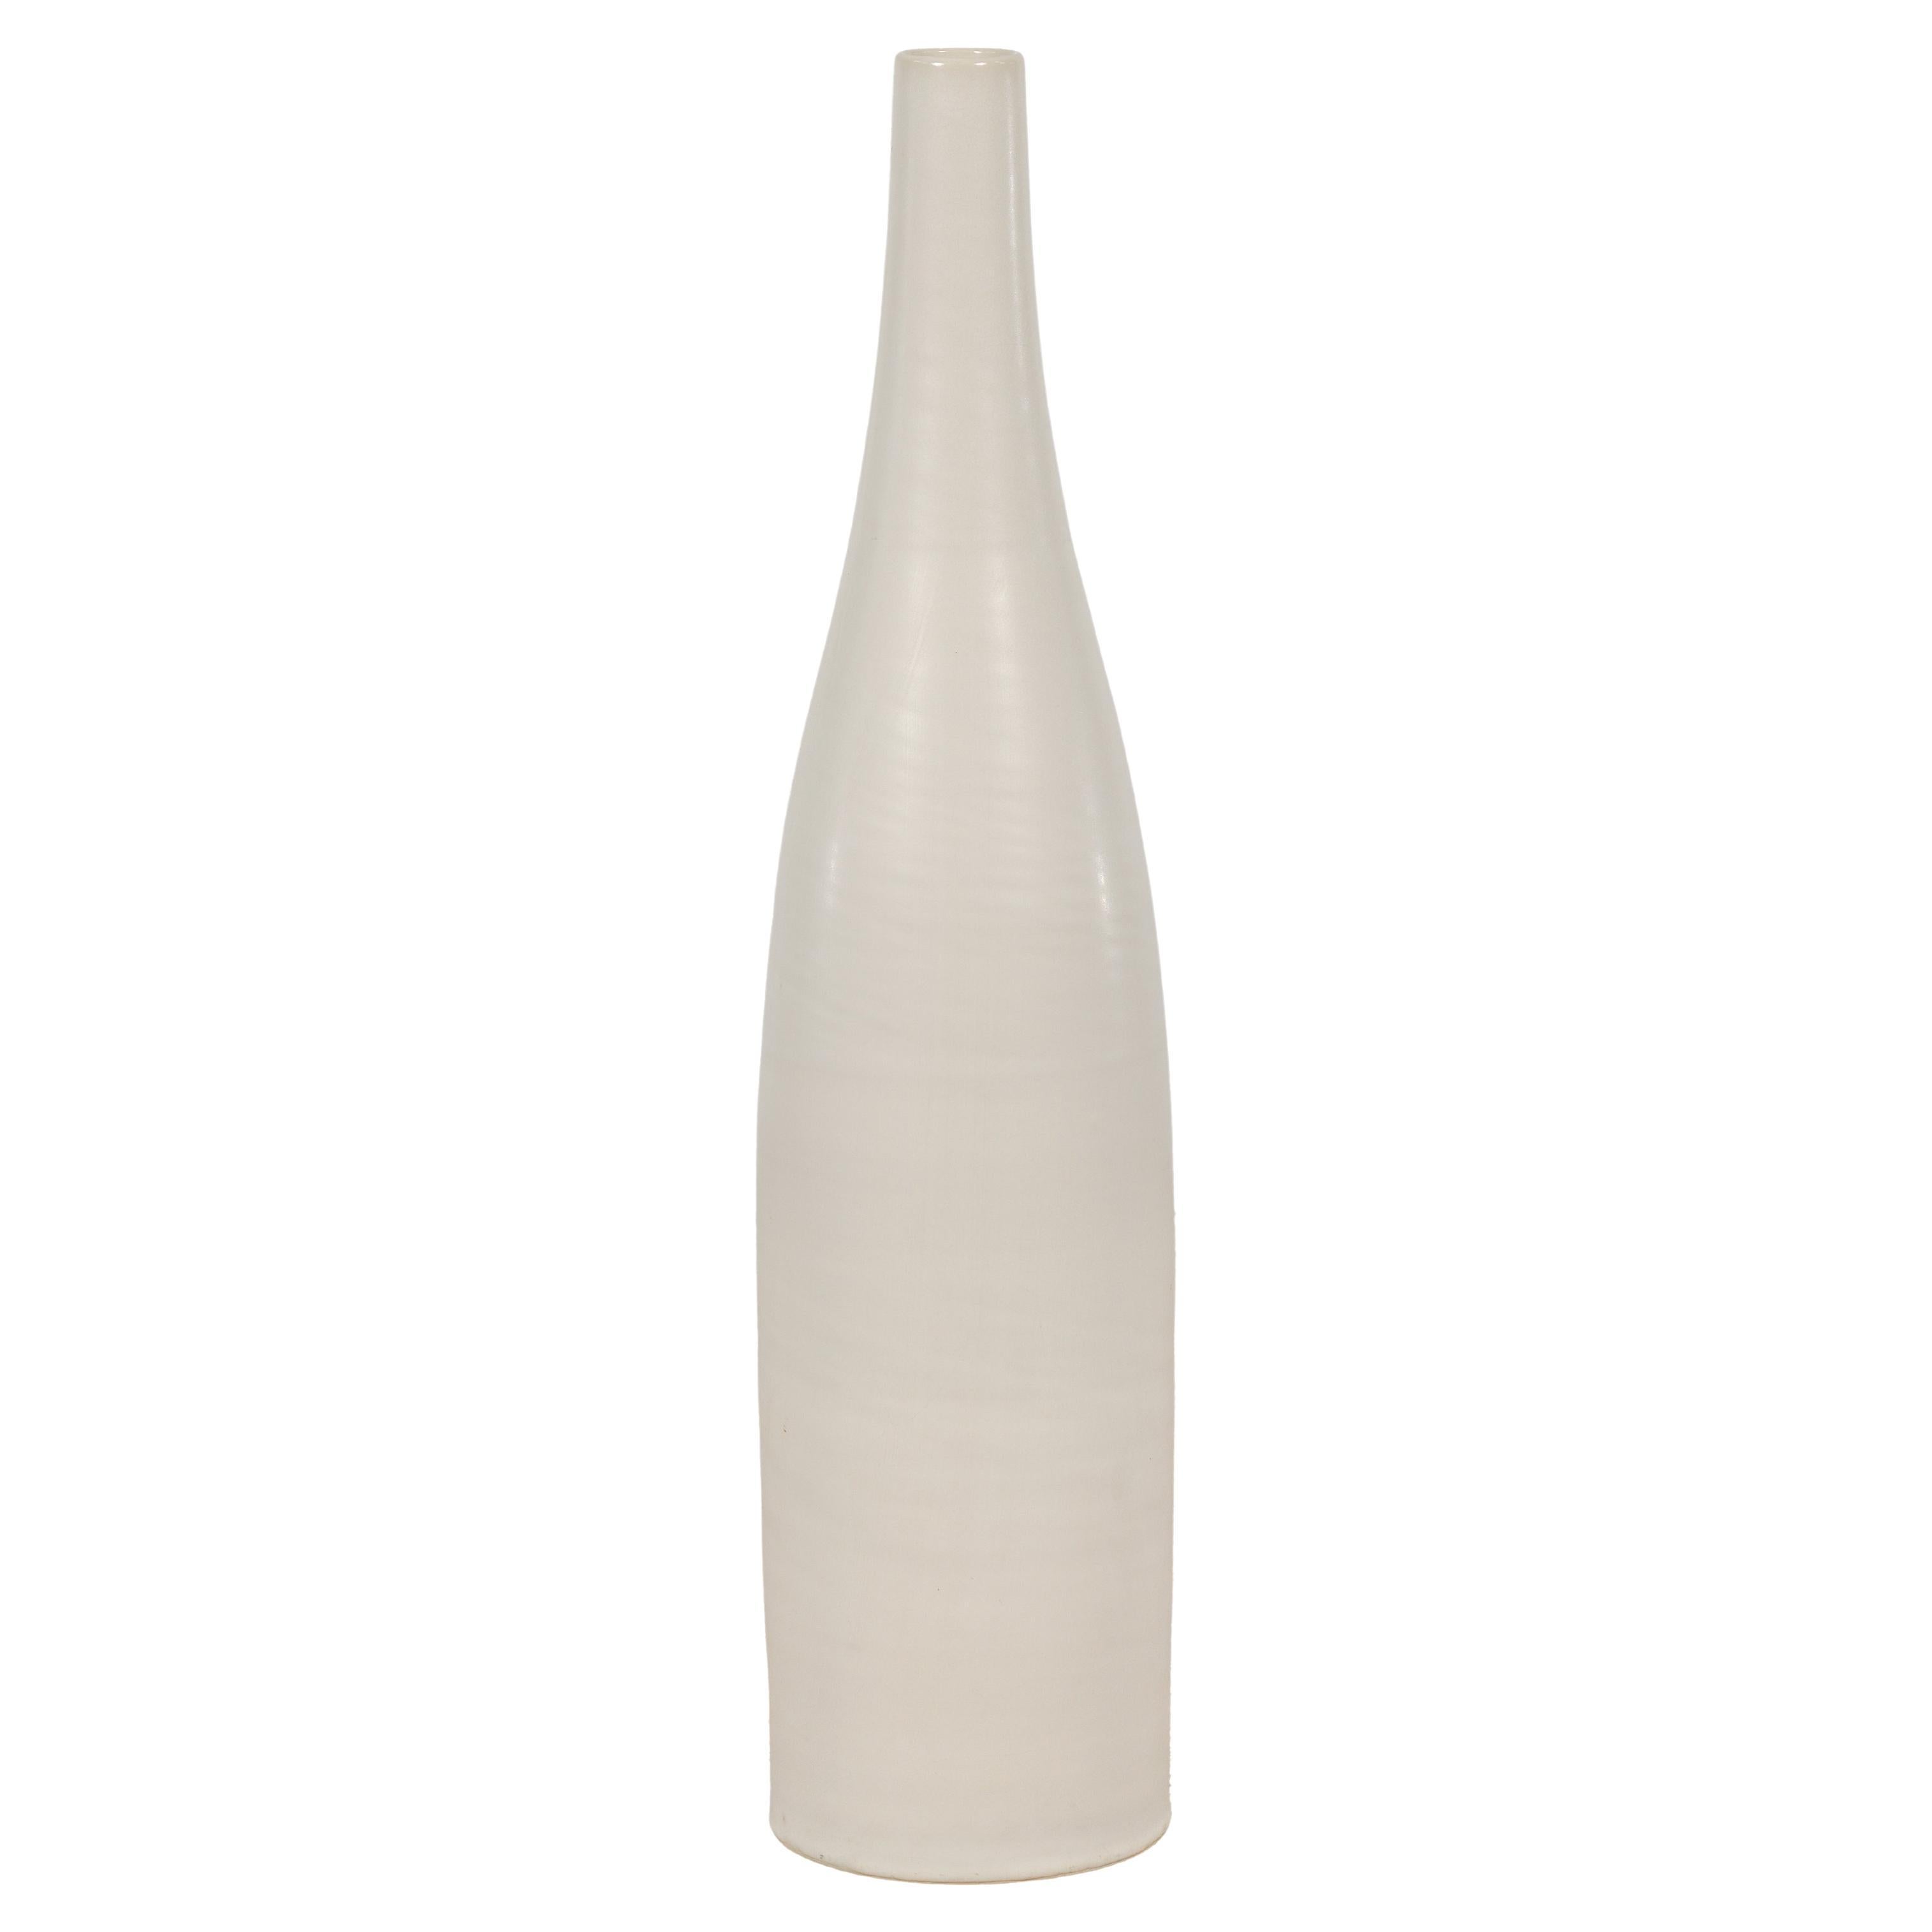 Hohe Contemporary Vase mit cremefarbener Glasur und schlanker Silhouette, handgefertigt